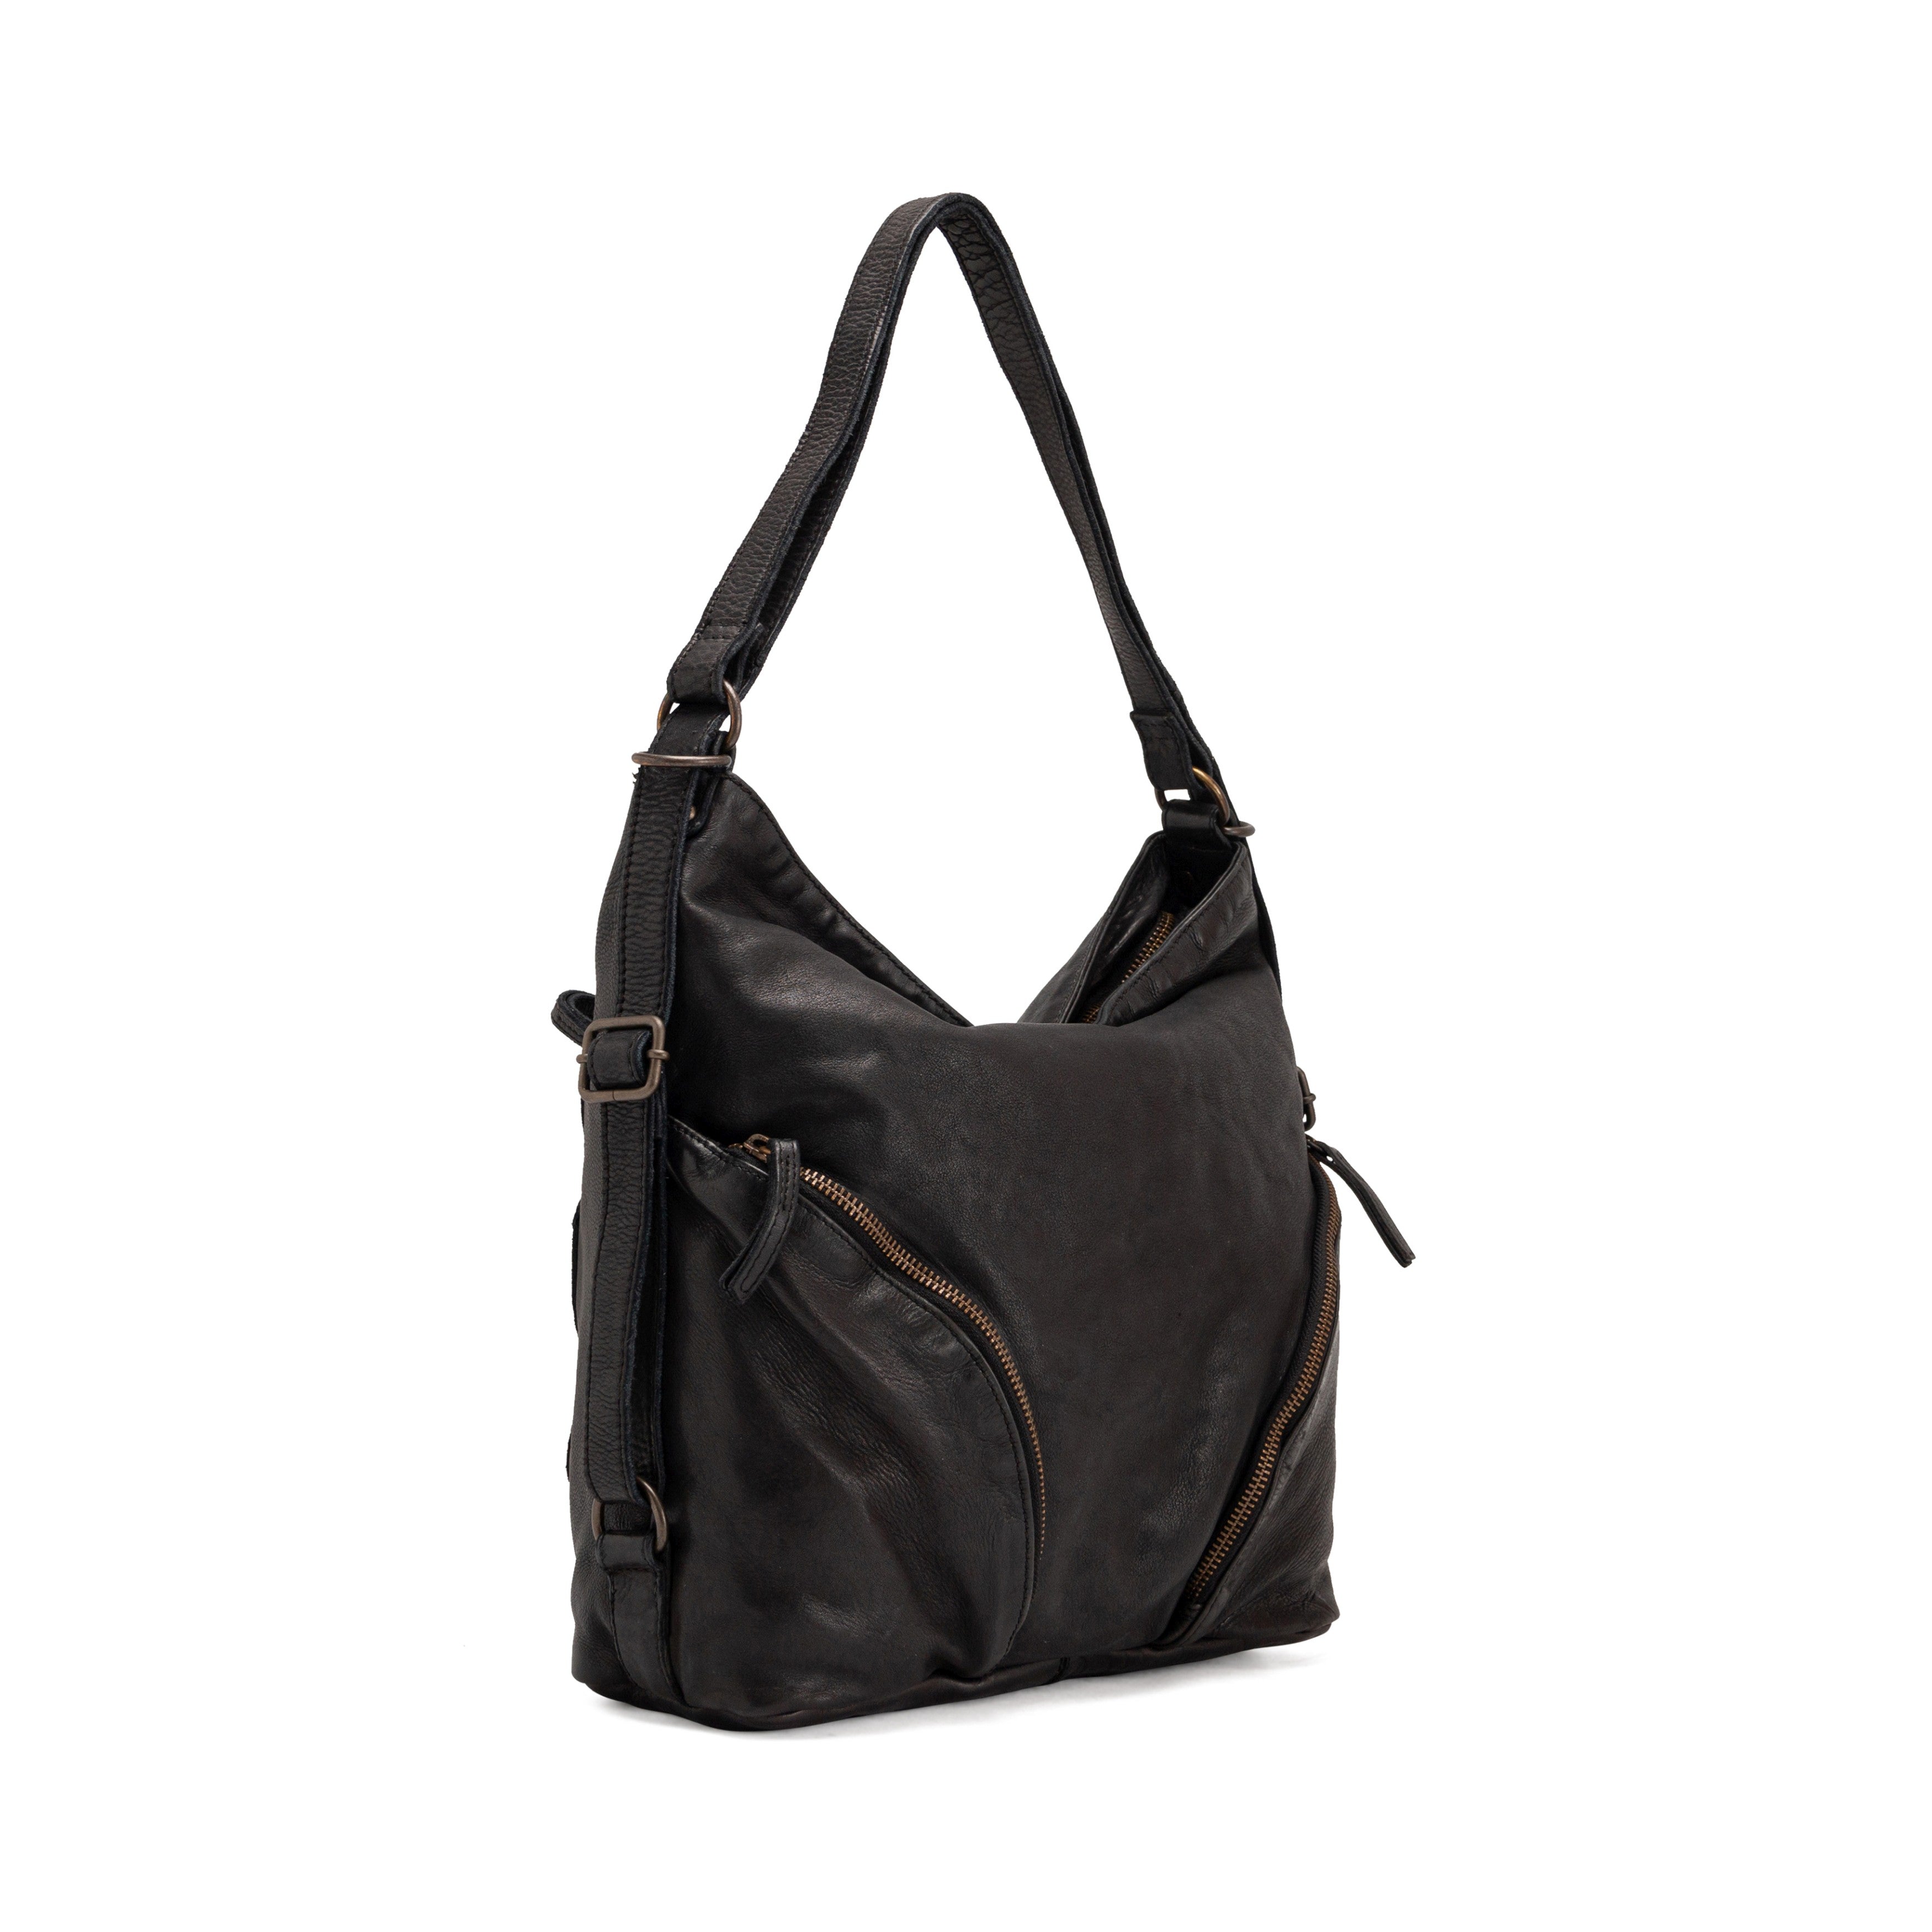 Gianni Conti Violet Leather Shoulder Bag